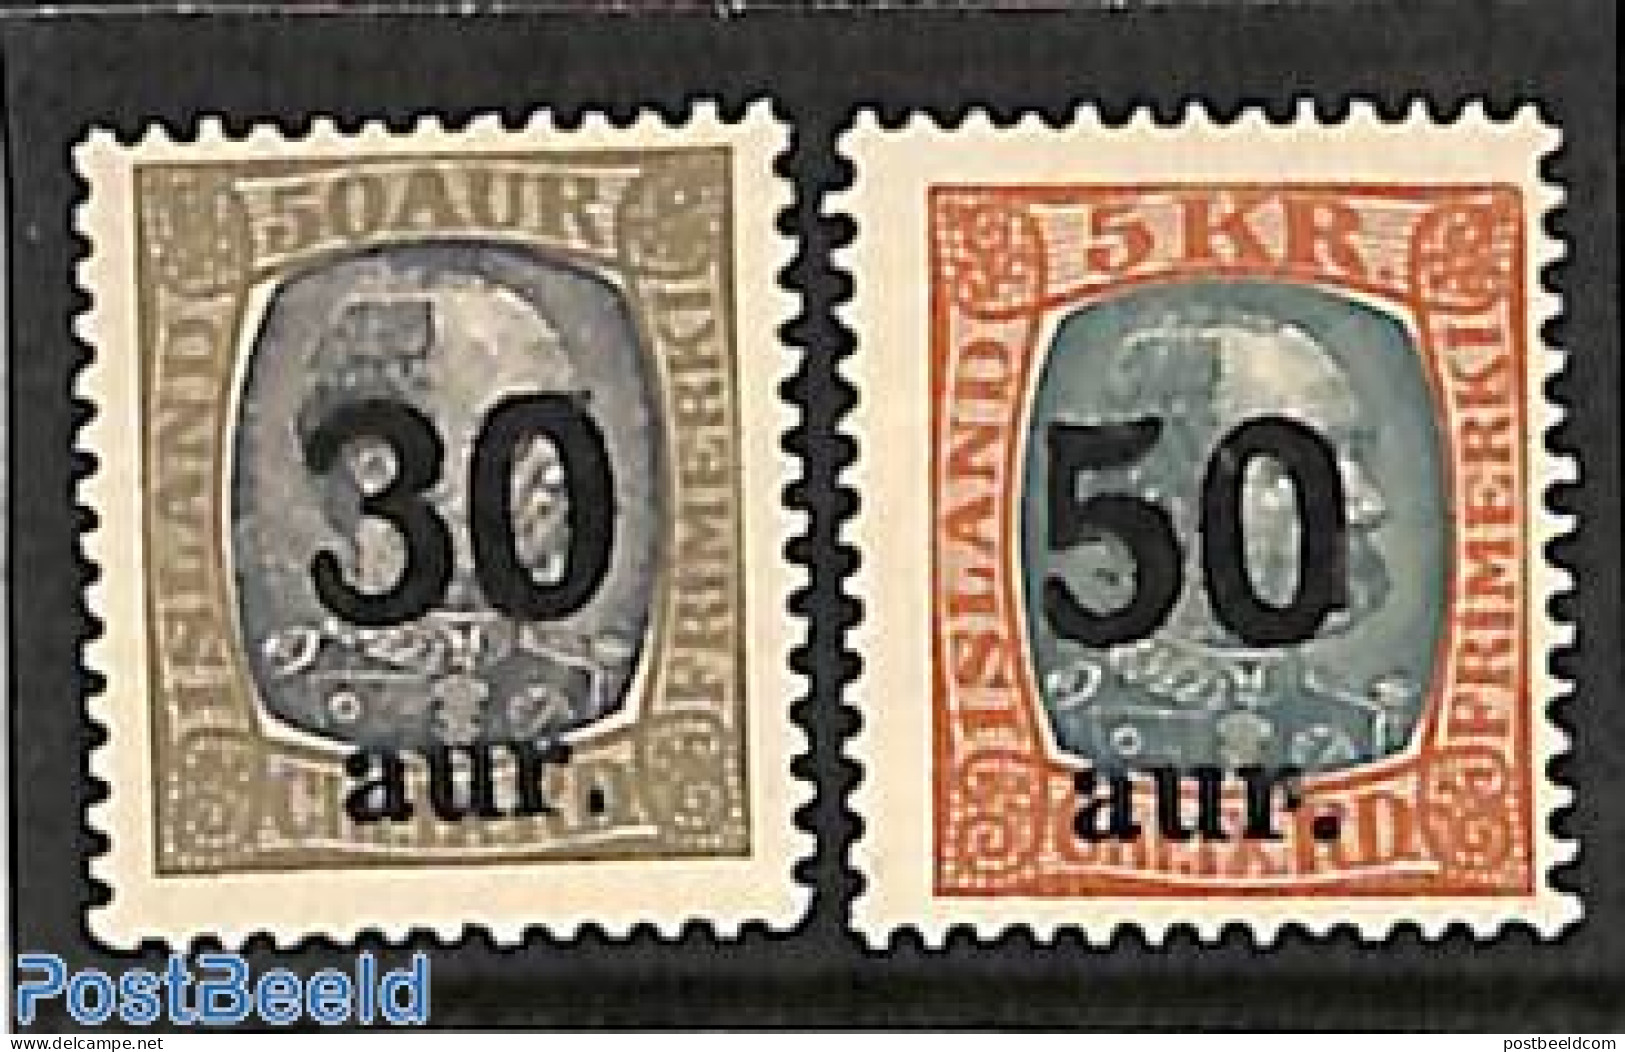 Iceland 1925 Overprints 2v, Unused (hinged) - Neufs